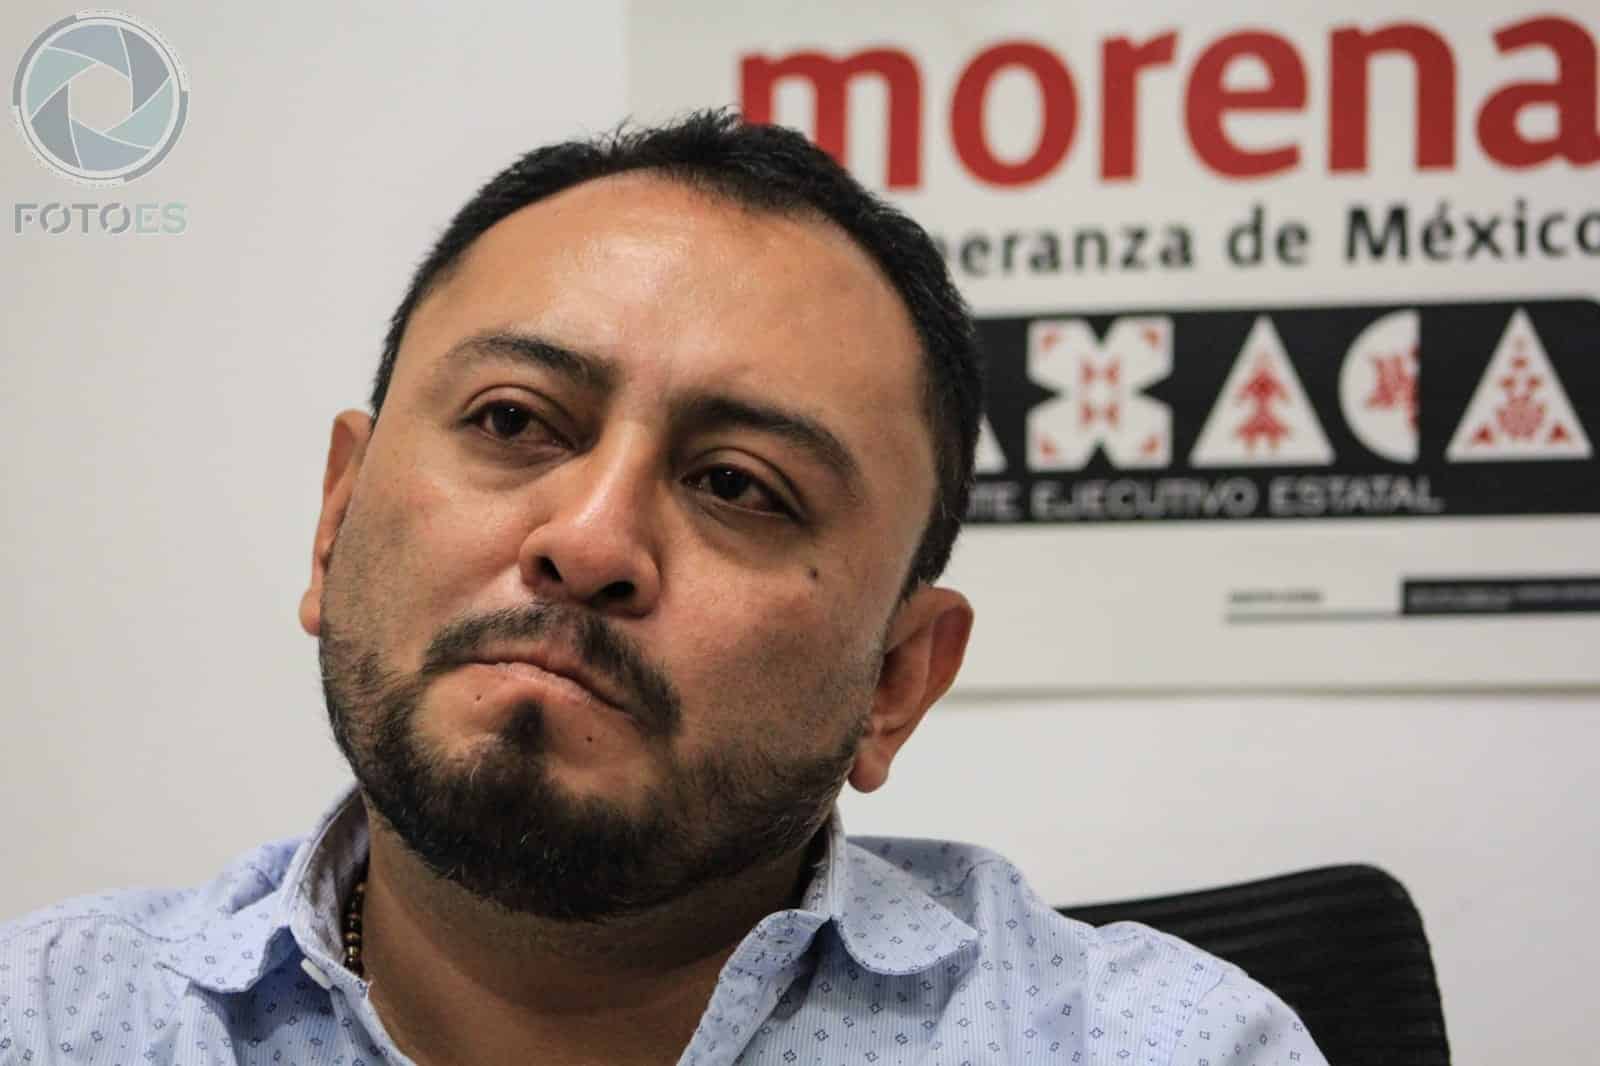 Morena triunfará en Oaxaca, pero no por ello pondrán “una vaca”: Sesul Bolaños